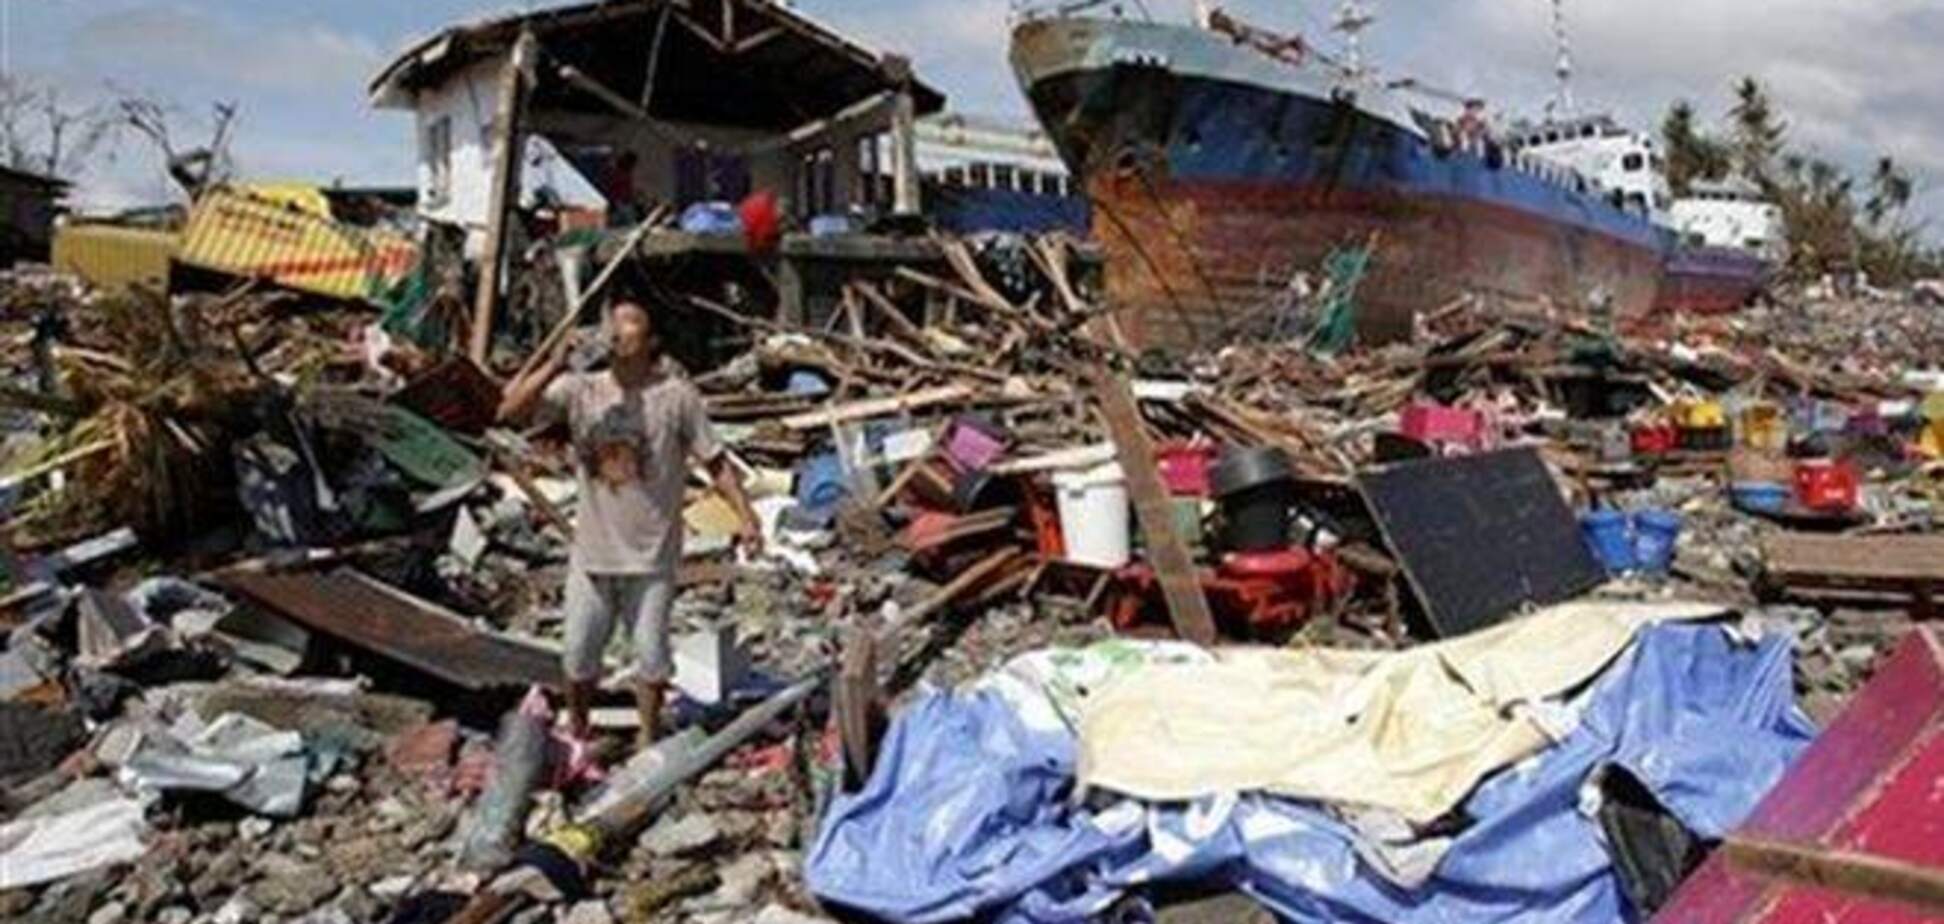 ООН назвала тайфун 'Хайян' самым разрушительным за последние 100 лет